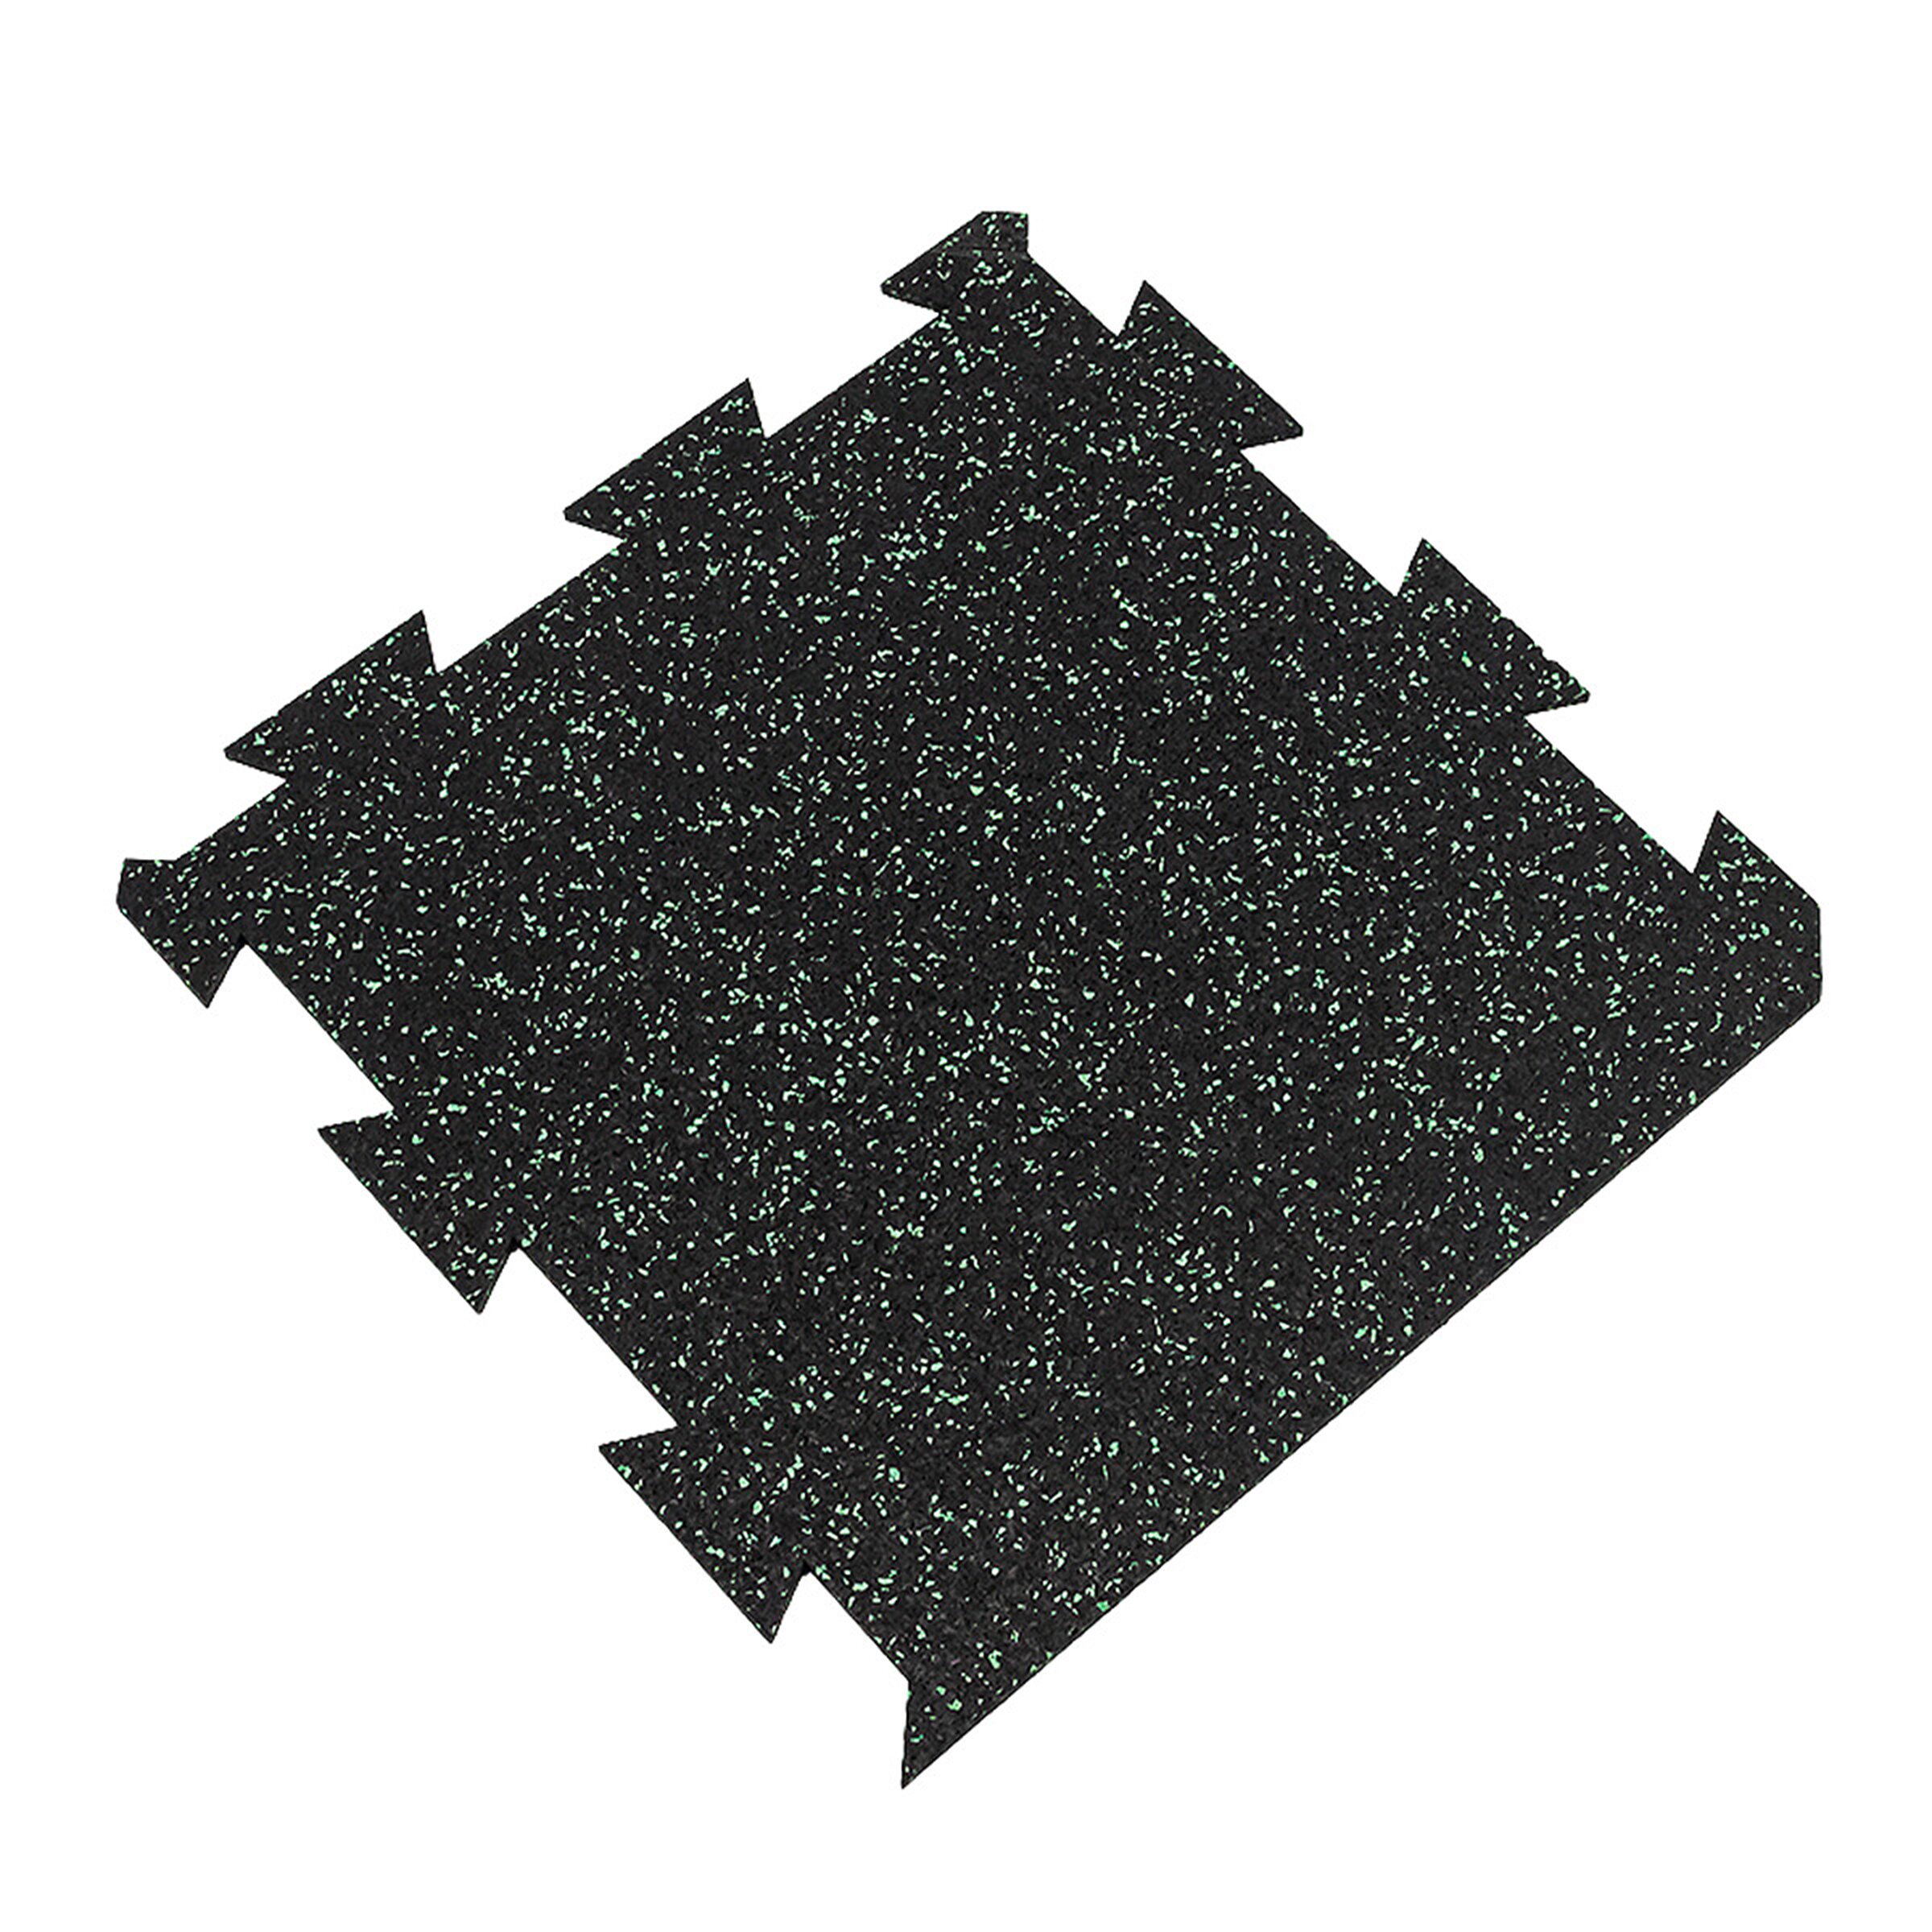 Čierno-zelená gumová modulová puzzle dlažba (okraj) FLOMA FitFlo SF1050 - dĺžka 50 cm, šírka 50 cm a výška 0,8 cm